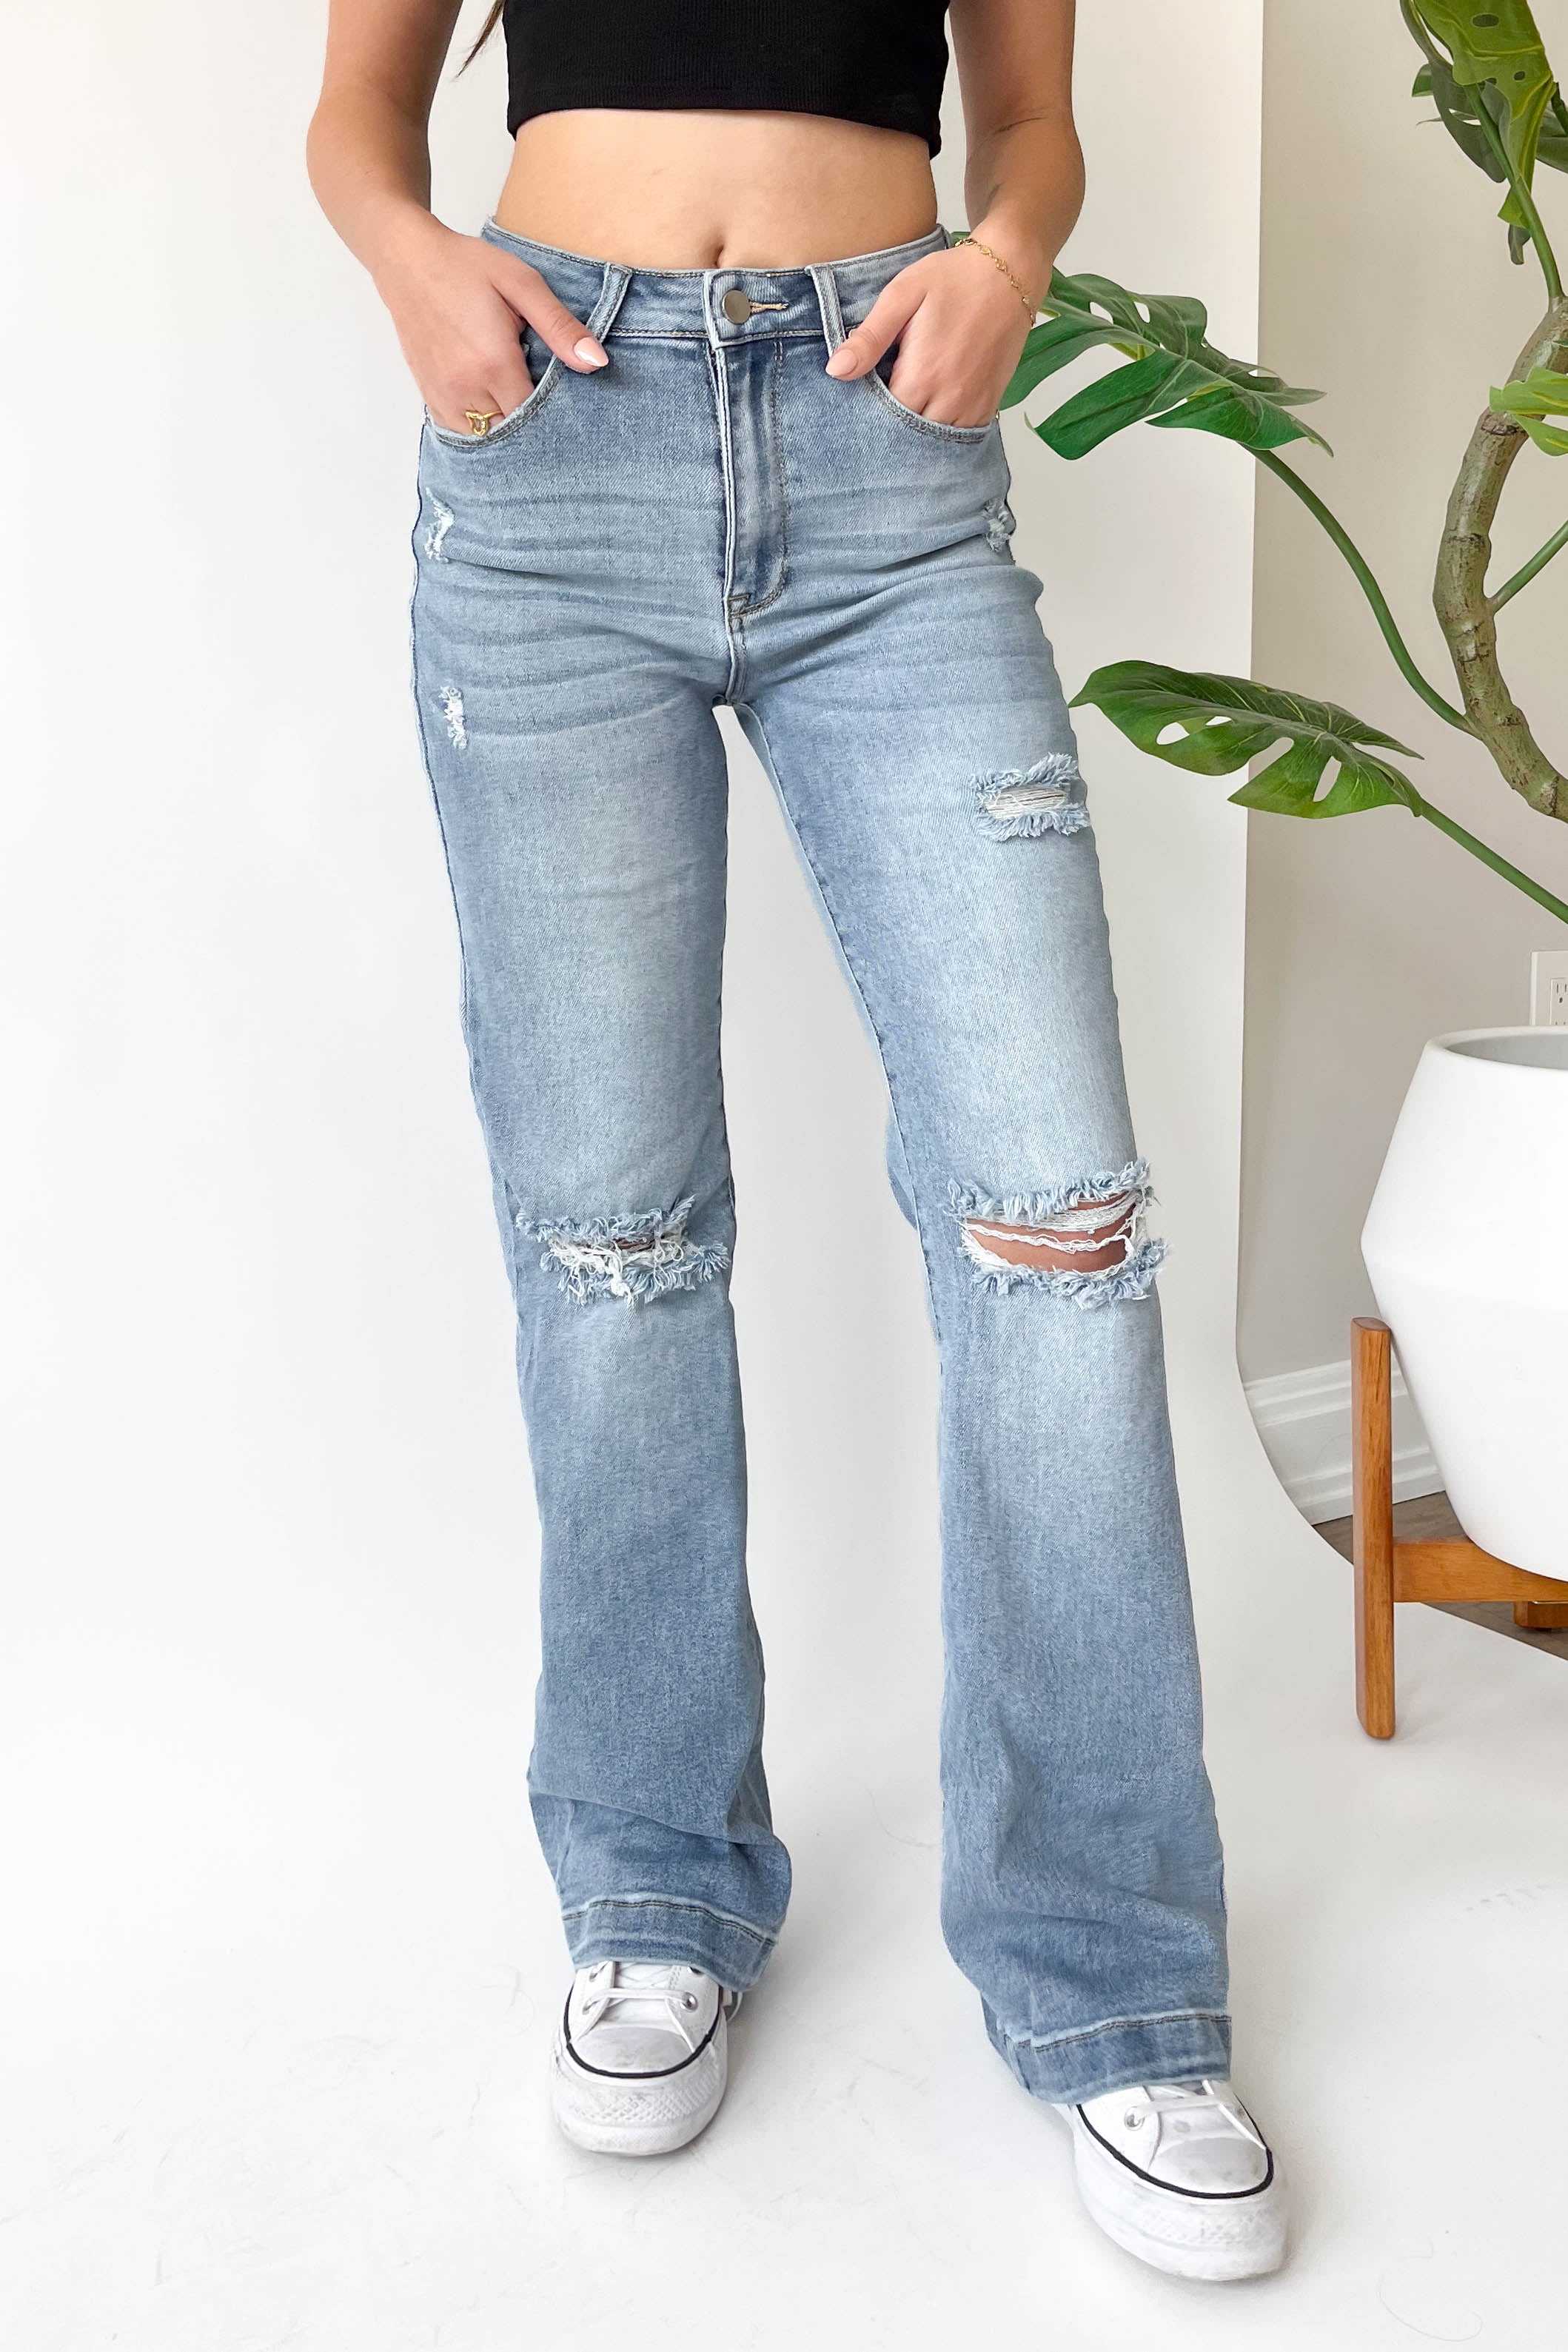 Cara Jeans in Medium Wash